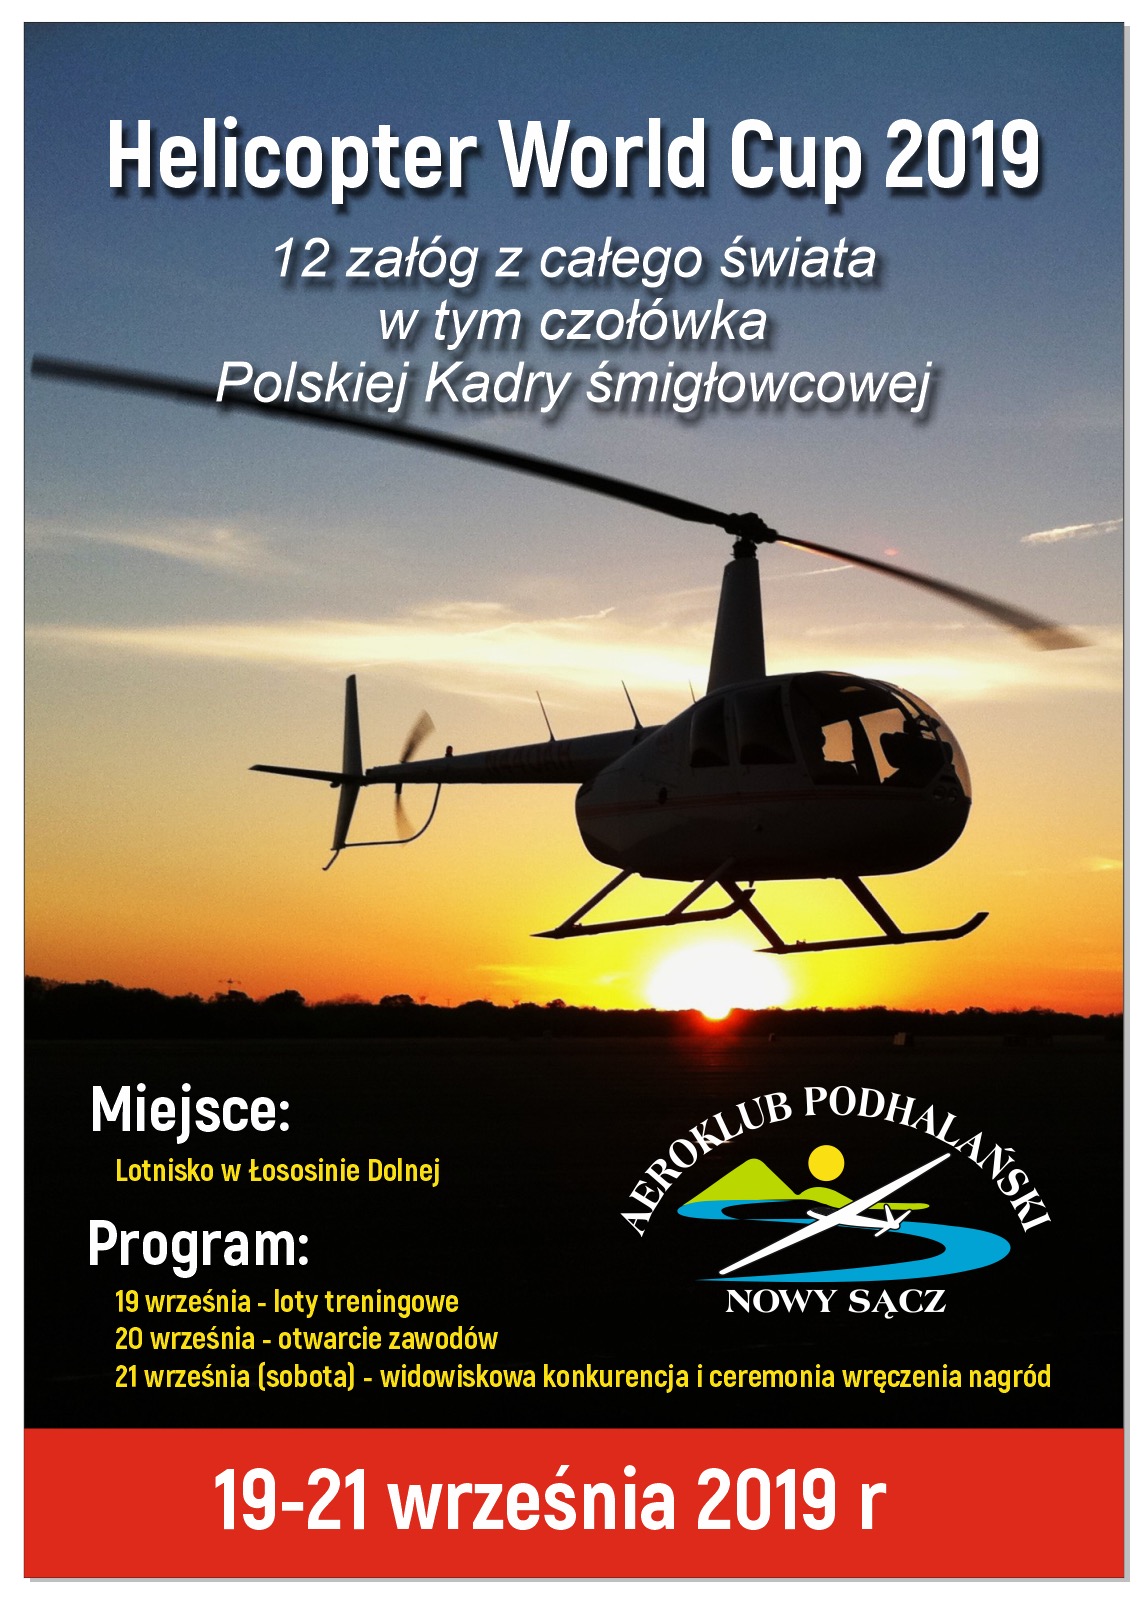 Aeroklub Podhalański w Łososinie Dolnej  ZAPRASZA